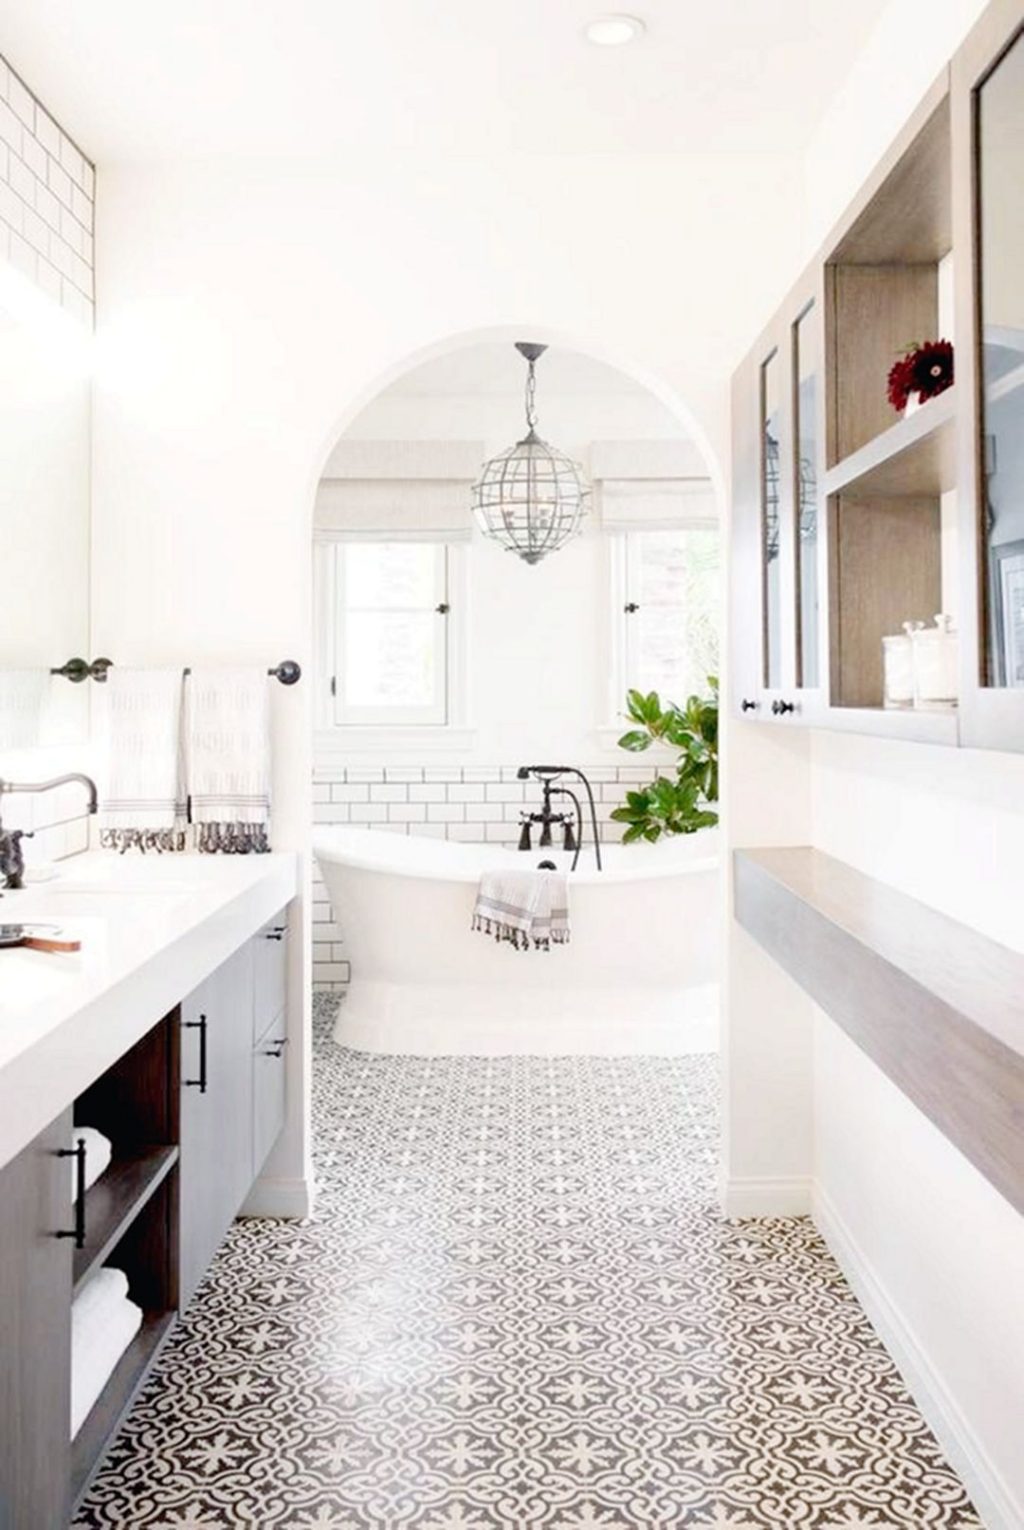 Modern Farmhouse Bathroom With White pattern Tiles